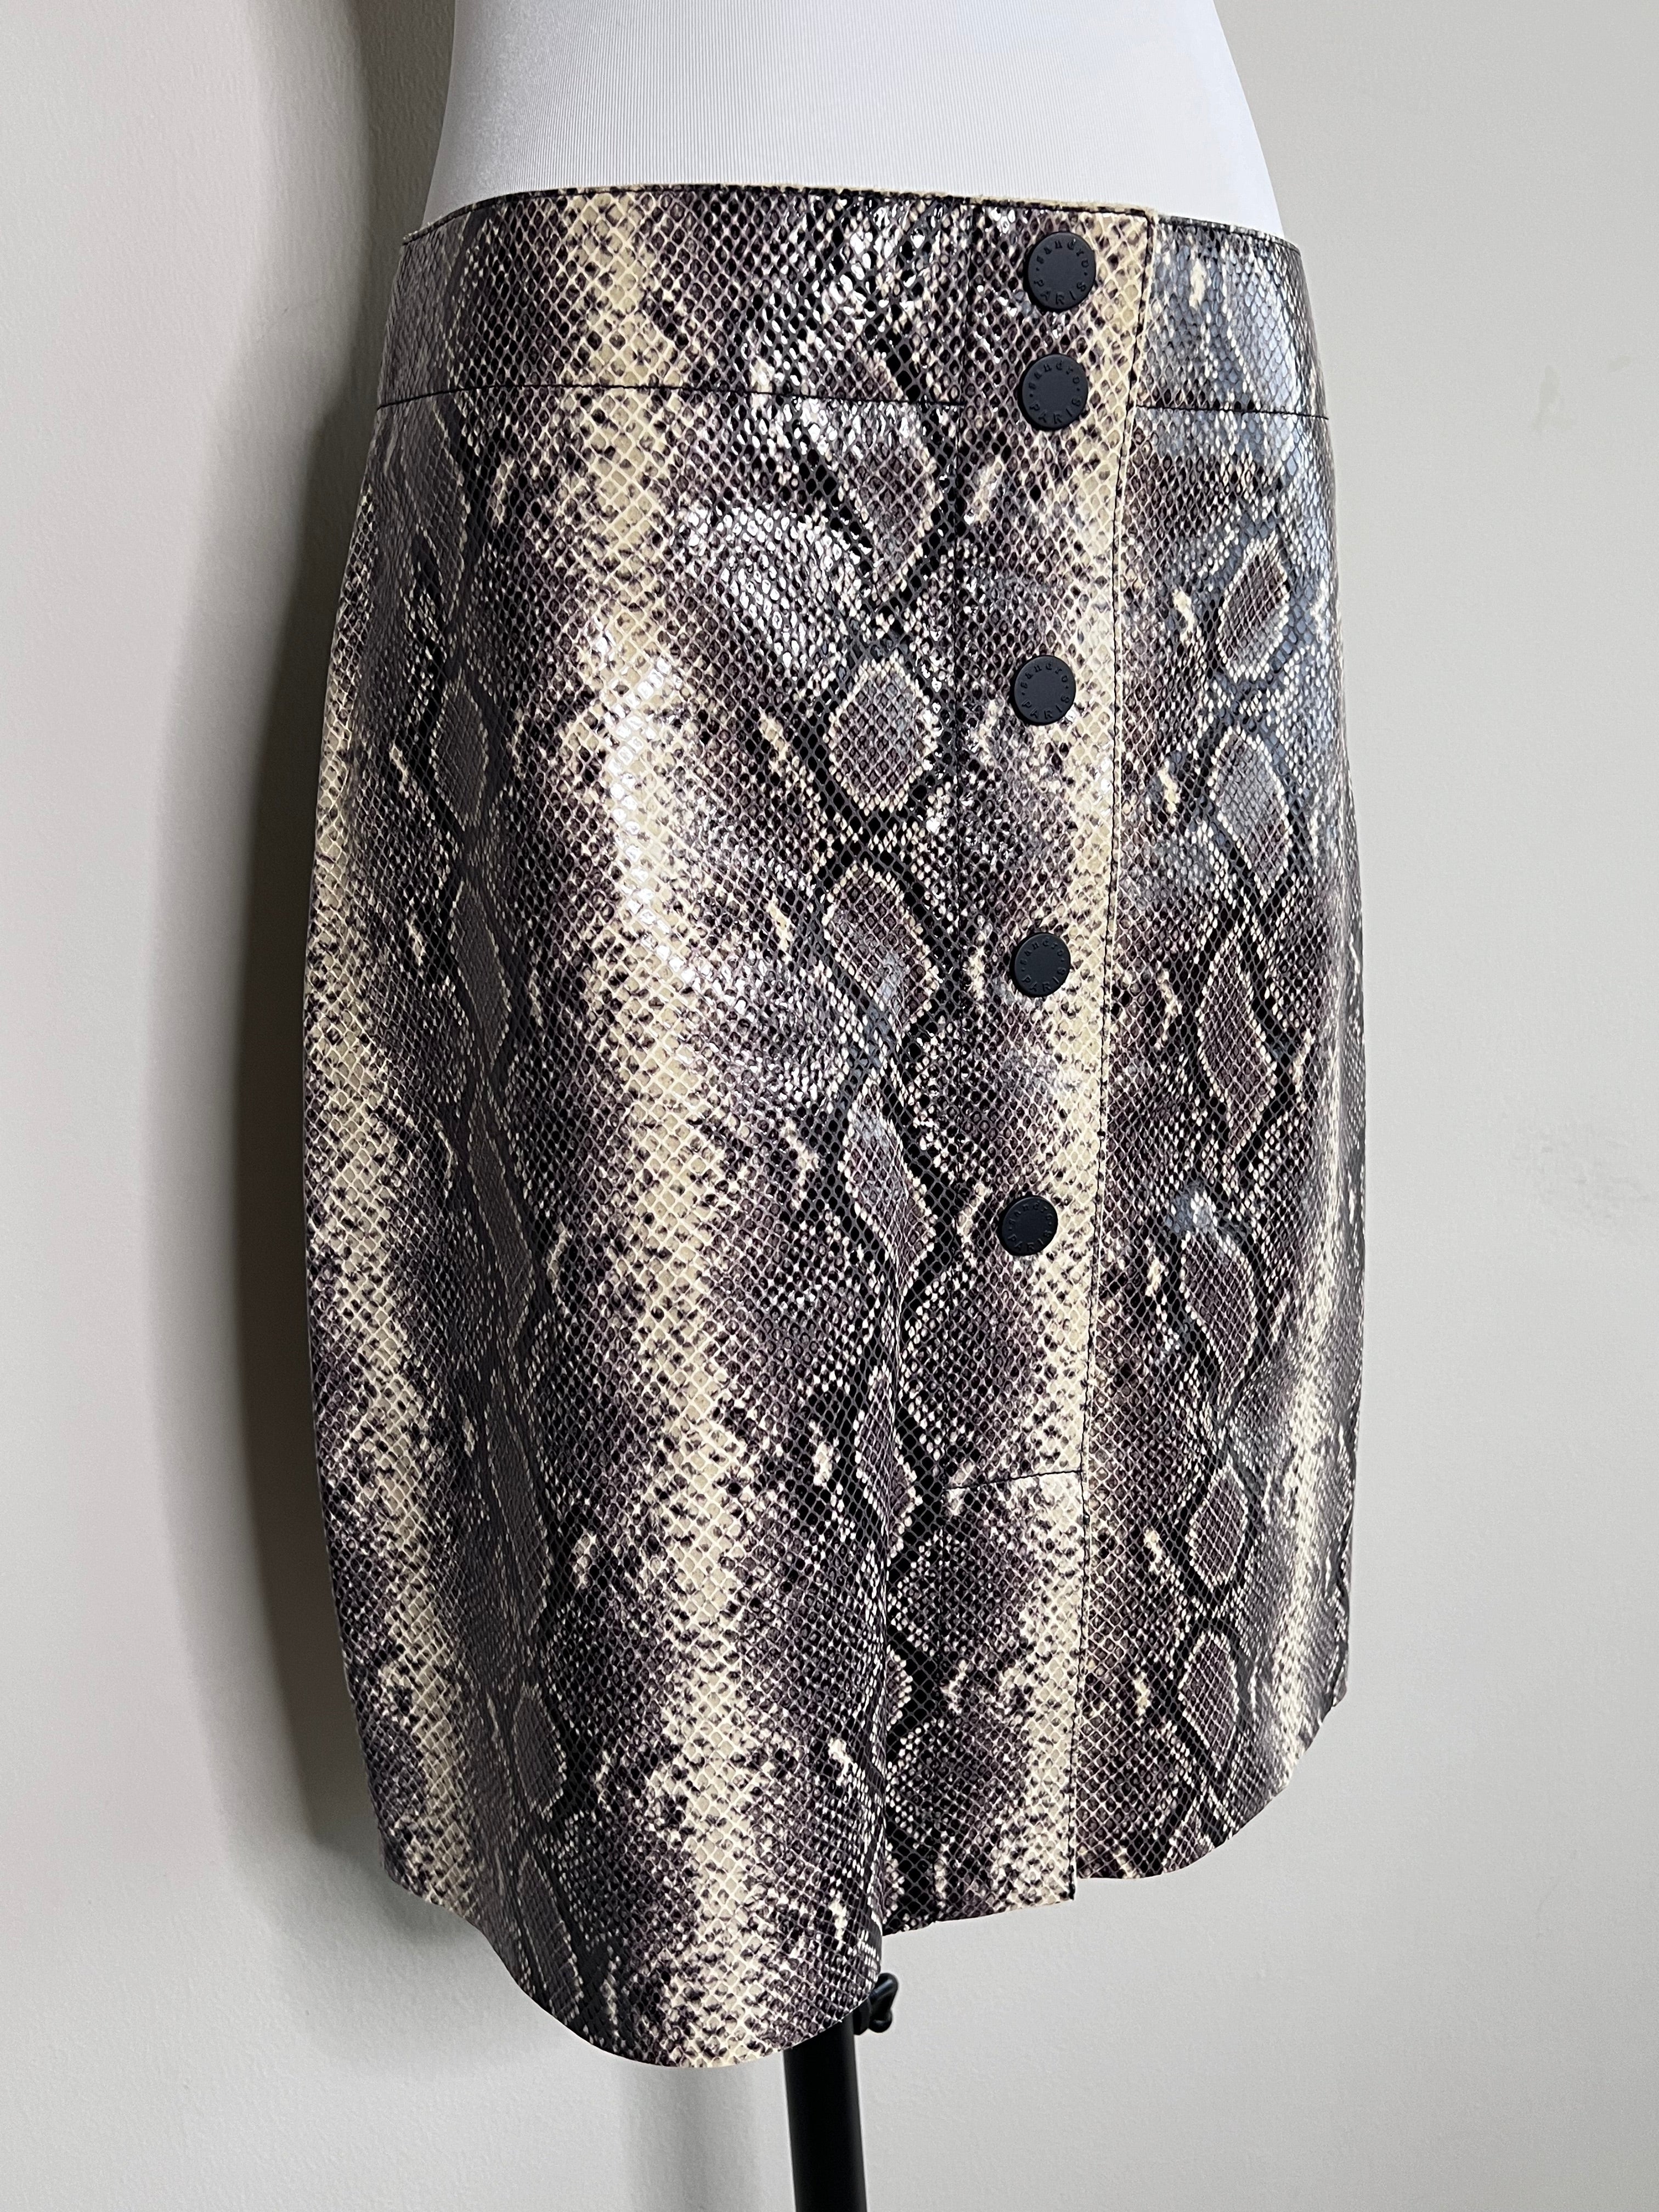 BRAND NEW !! Phyton Leather skirt - SANDRO